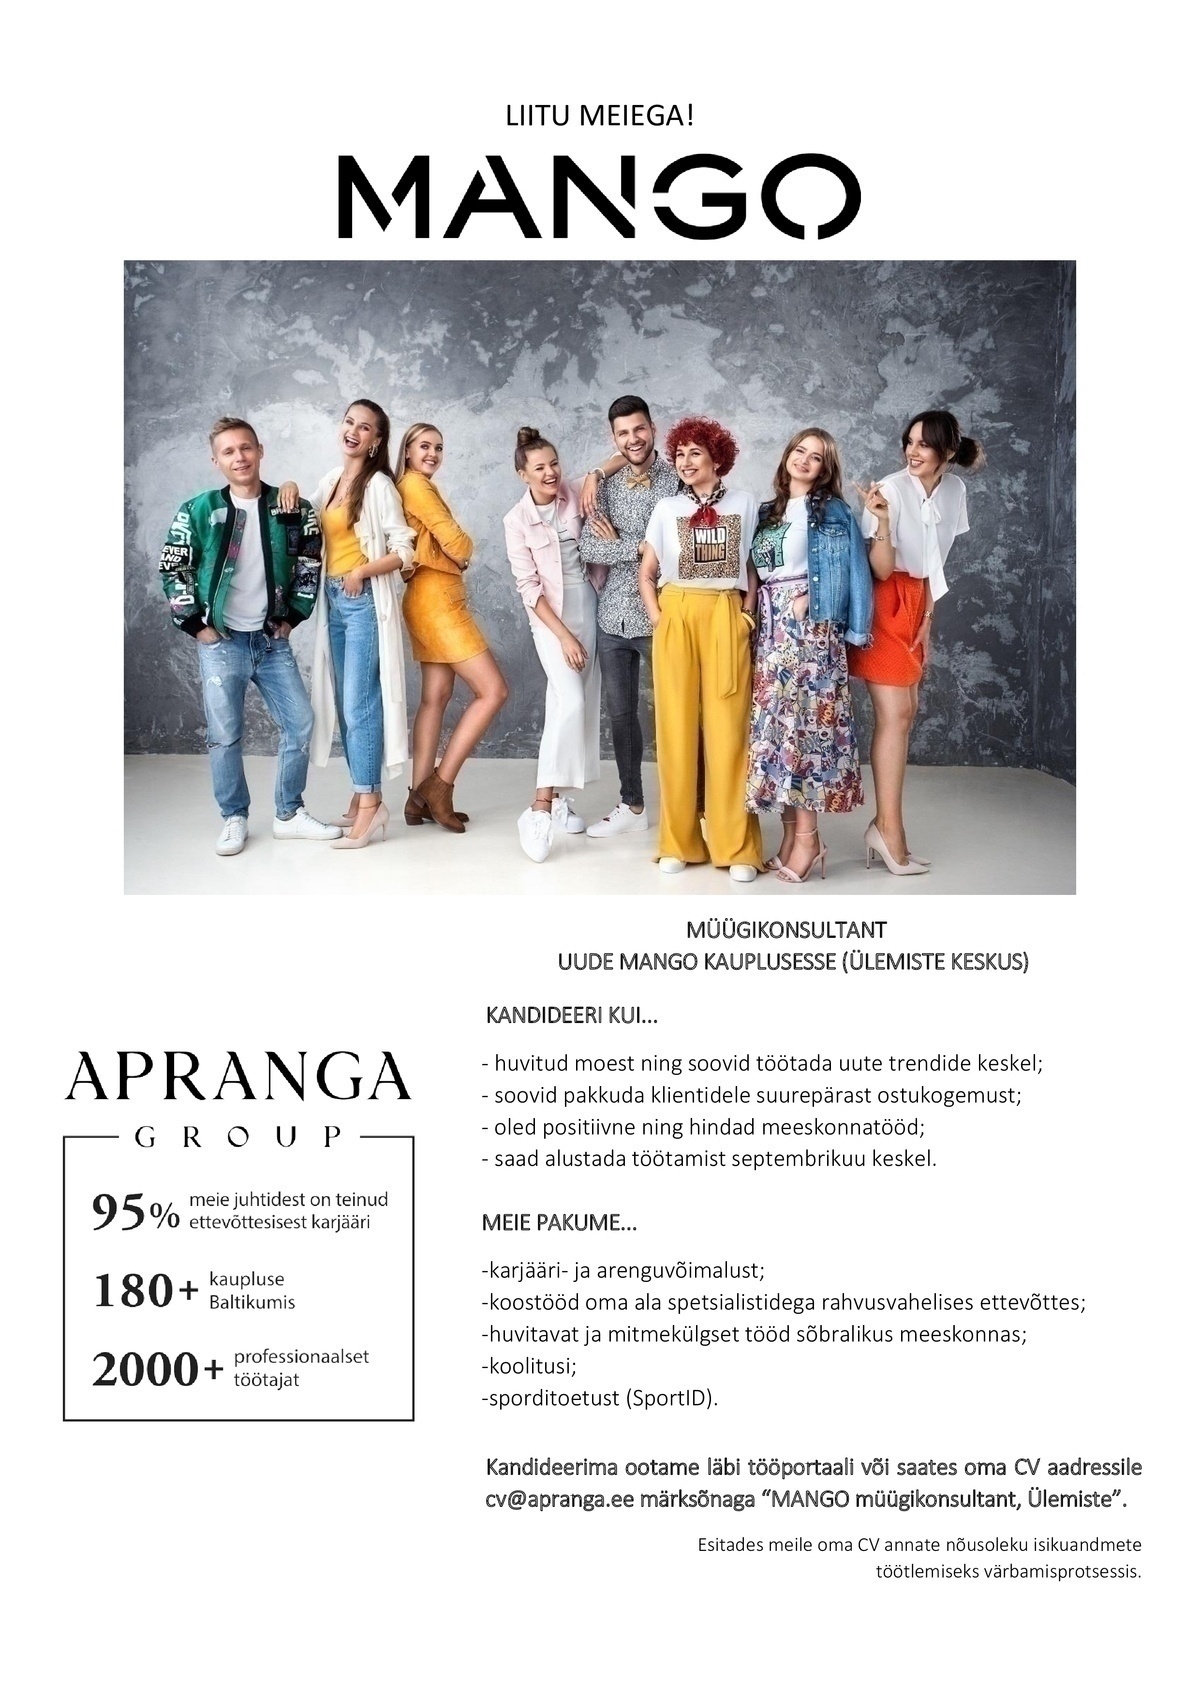 Apranga Estonia OÜ Müügikonsultant varsti avatavasse MANGO kauplusesse (Ülemiste keskus)